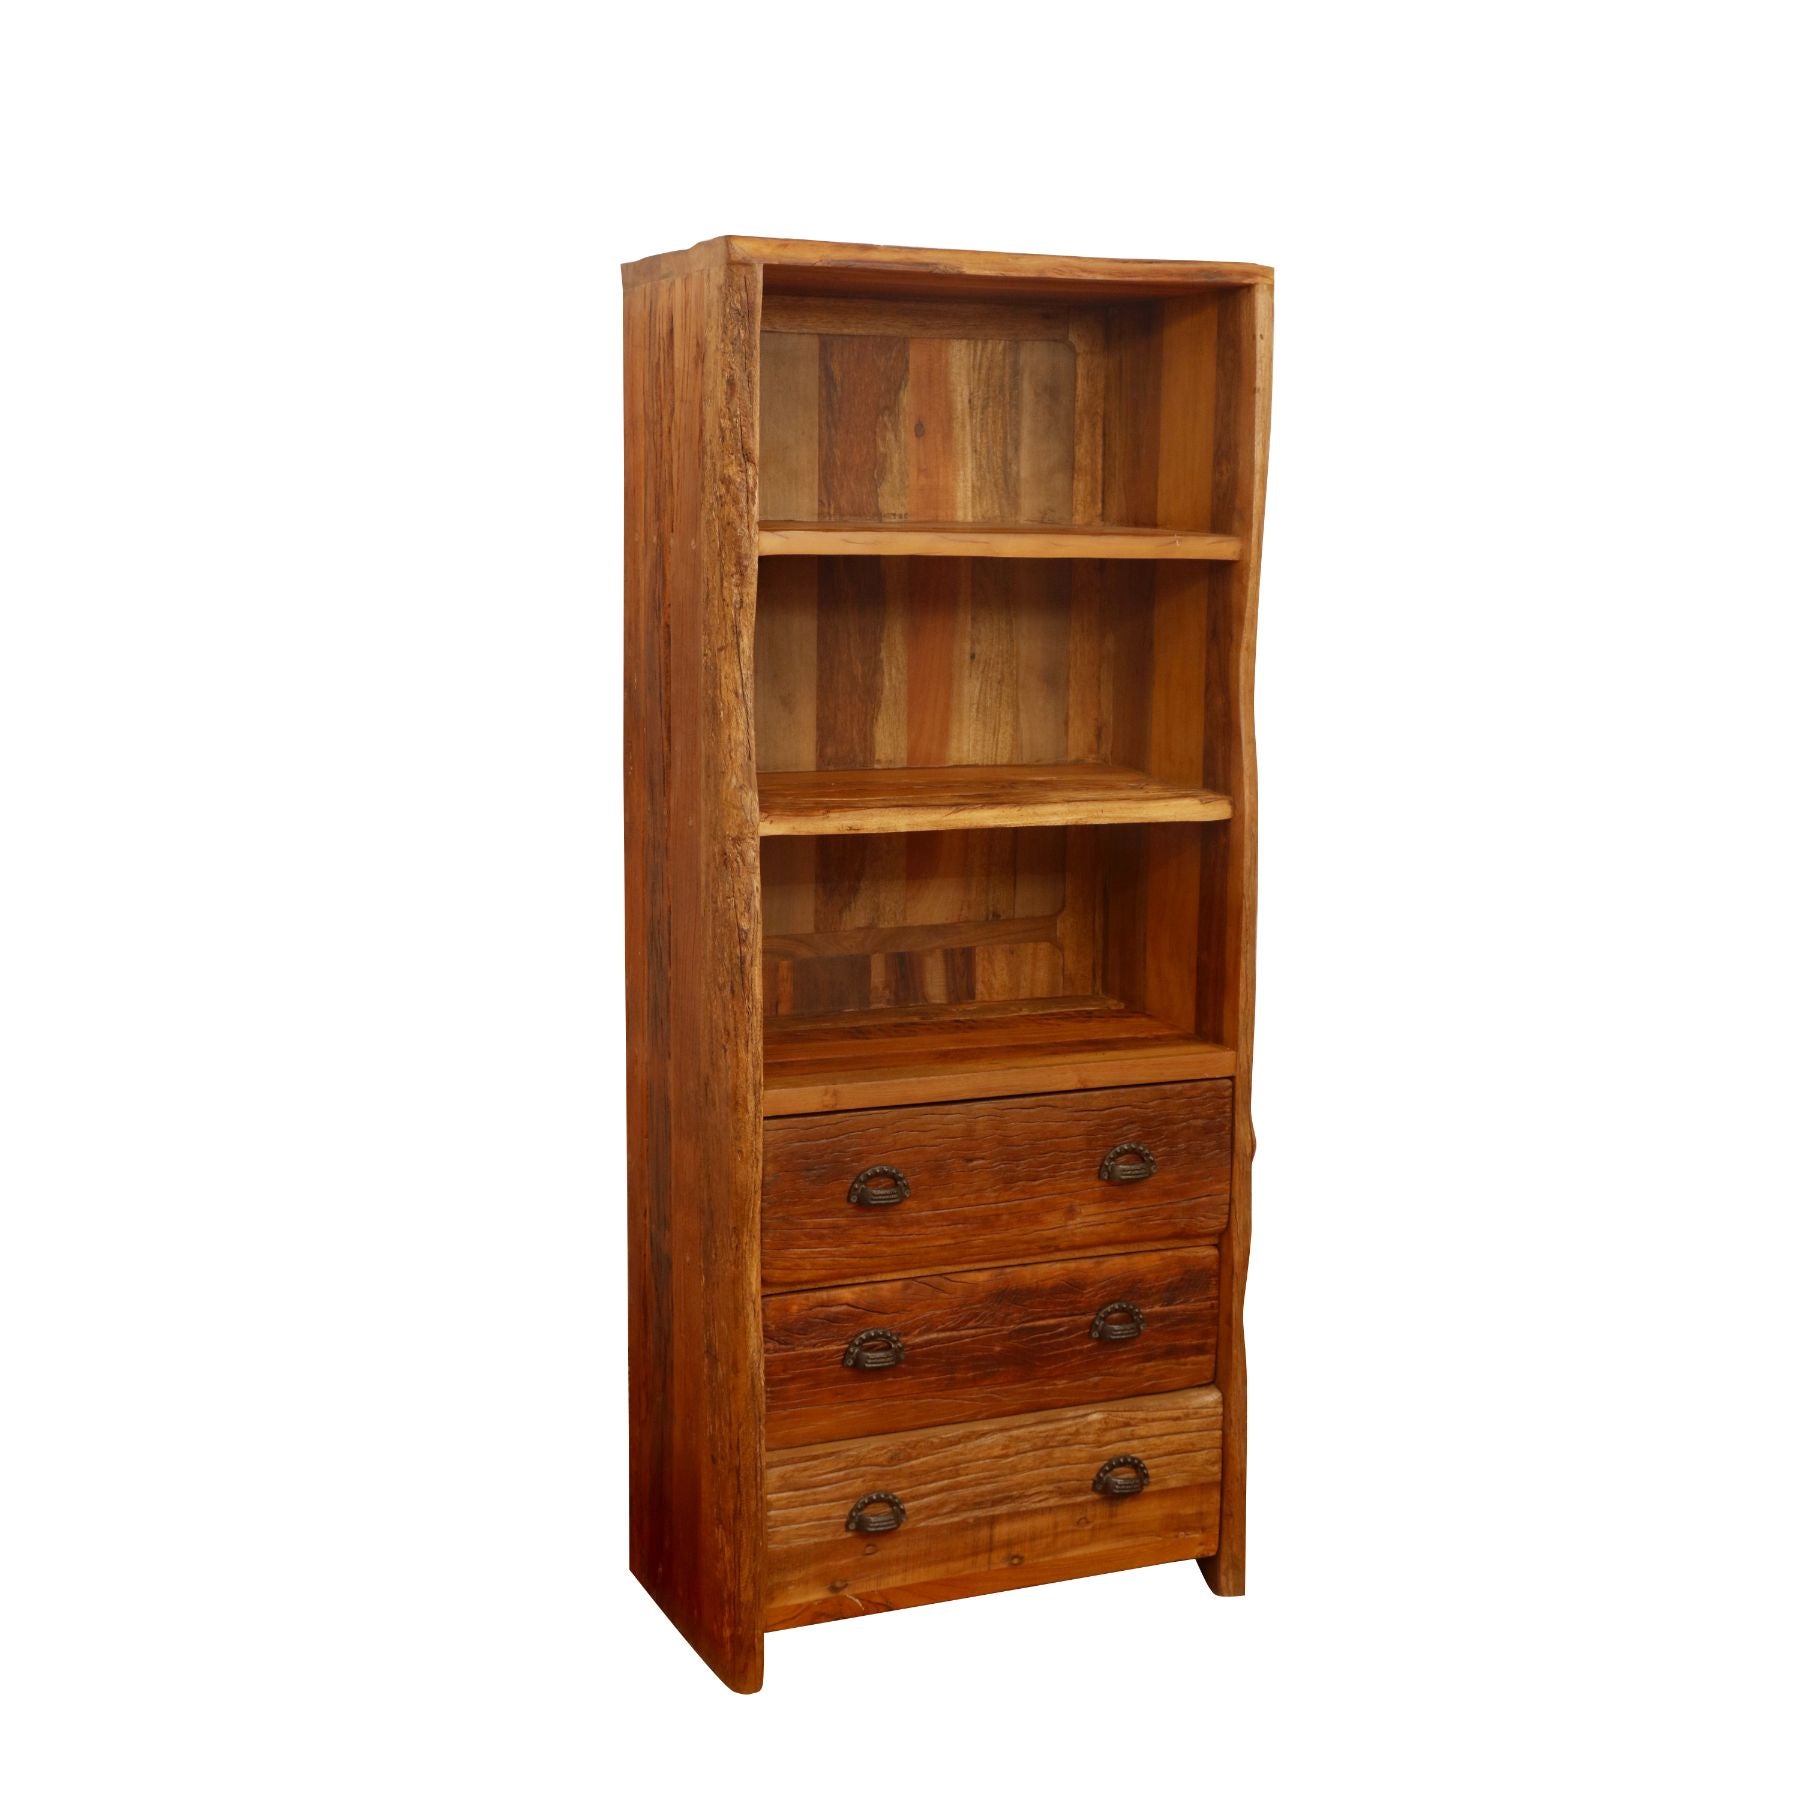 Classic Sturdy Reclaimed wood Bookshelf Book Rack